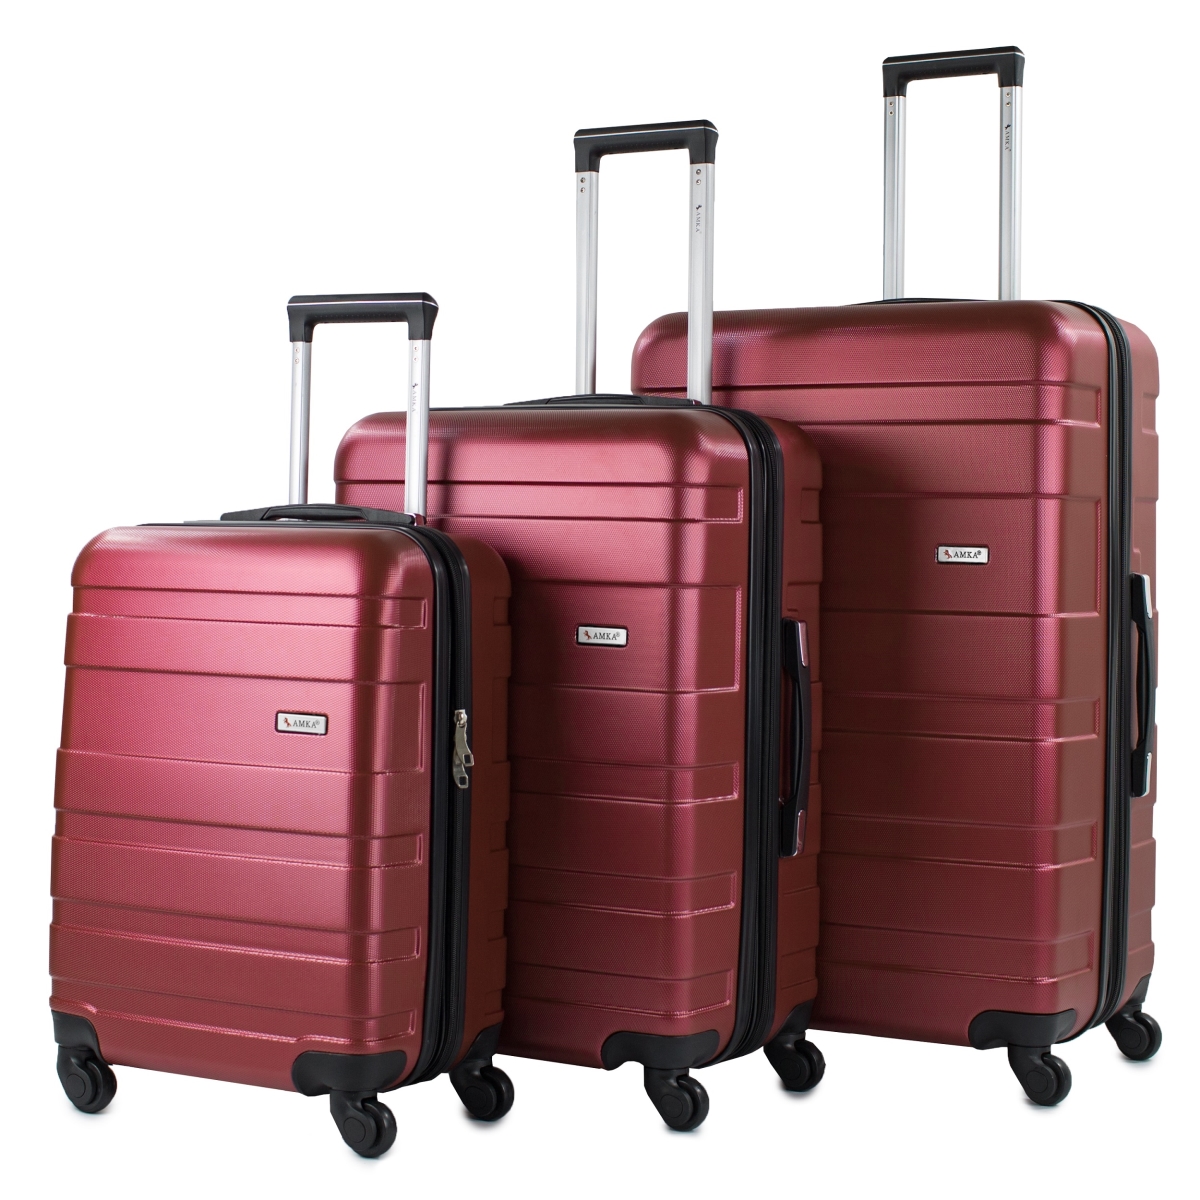 86996-3e-burgundy Verano Hardside 3 Piece Expandable Spinner Upright Luggage Set - Burgundy